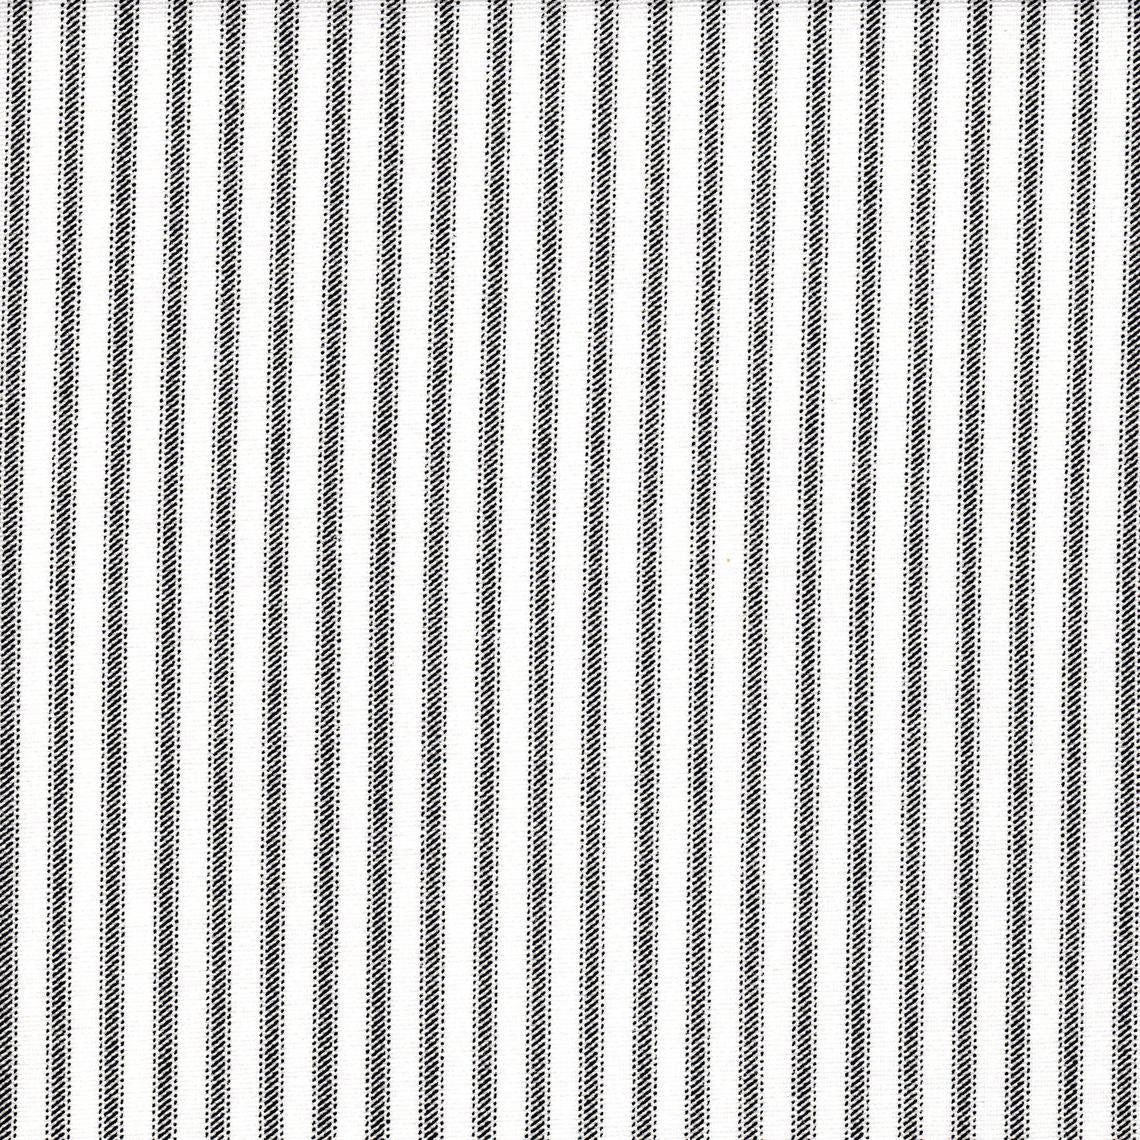 duvet cover in classic black ticking stripe on white